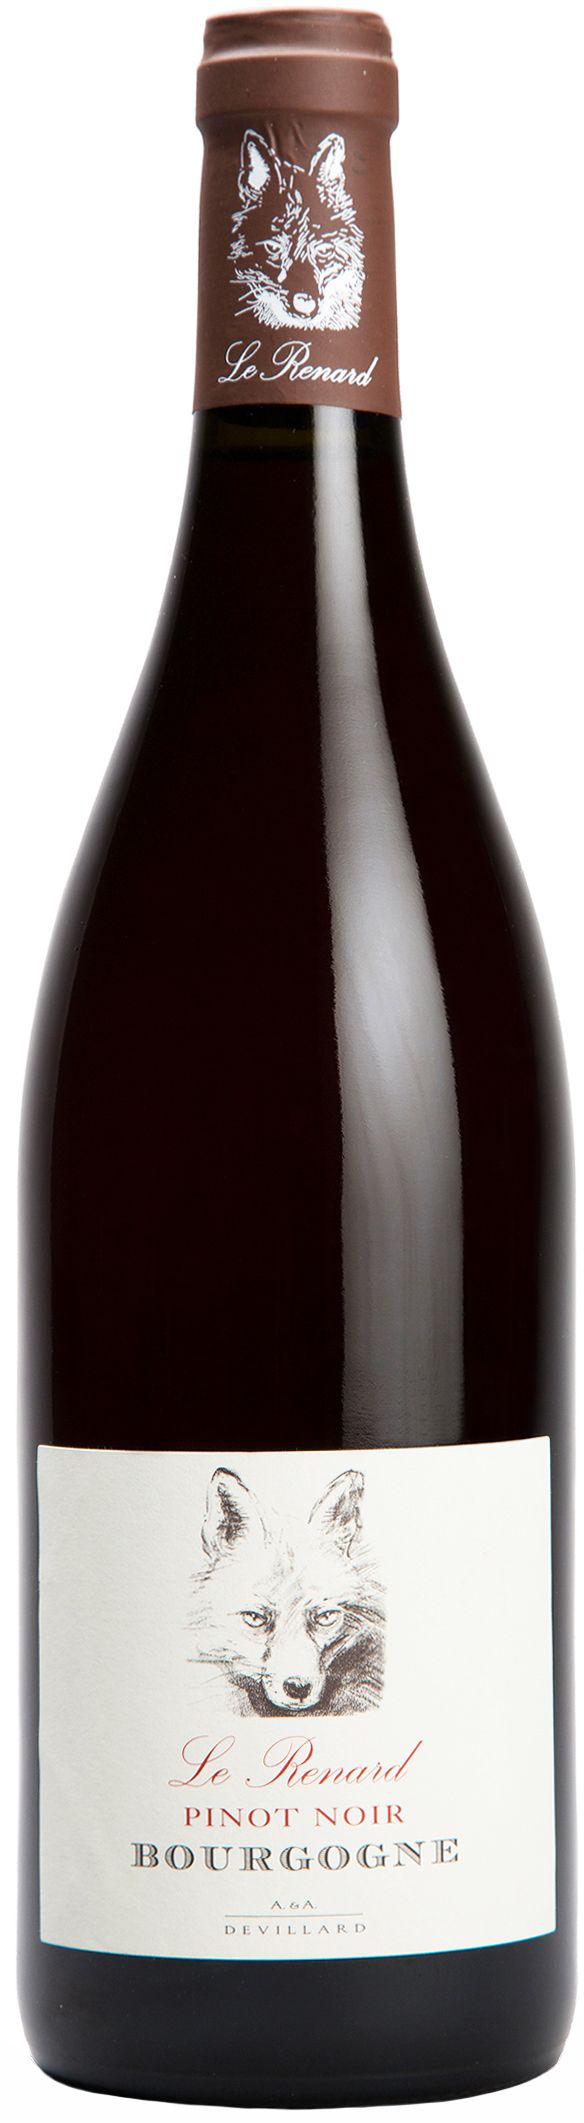 Chateau De Chamirey, Le Renard Pinot Noir Bourgogne, 2014